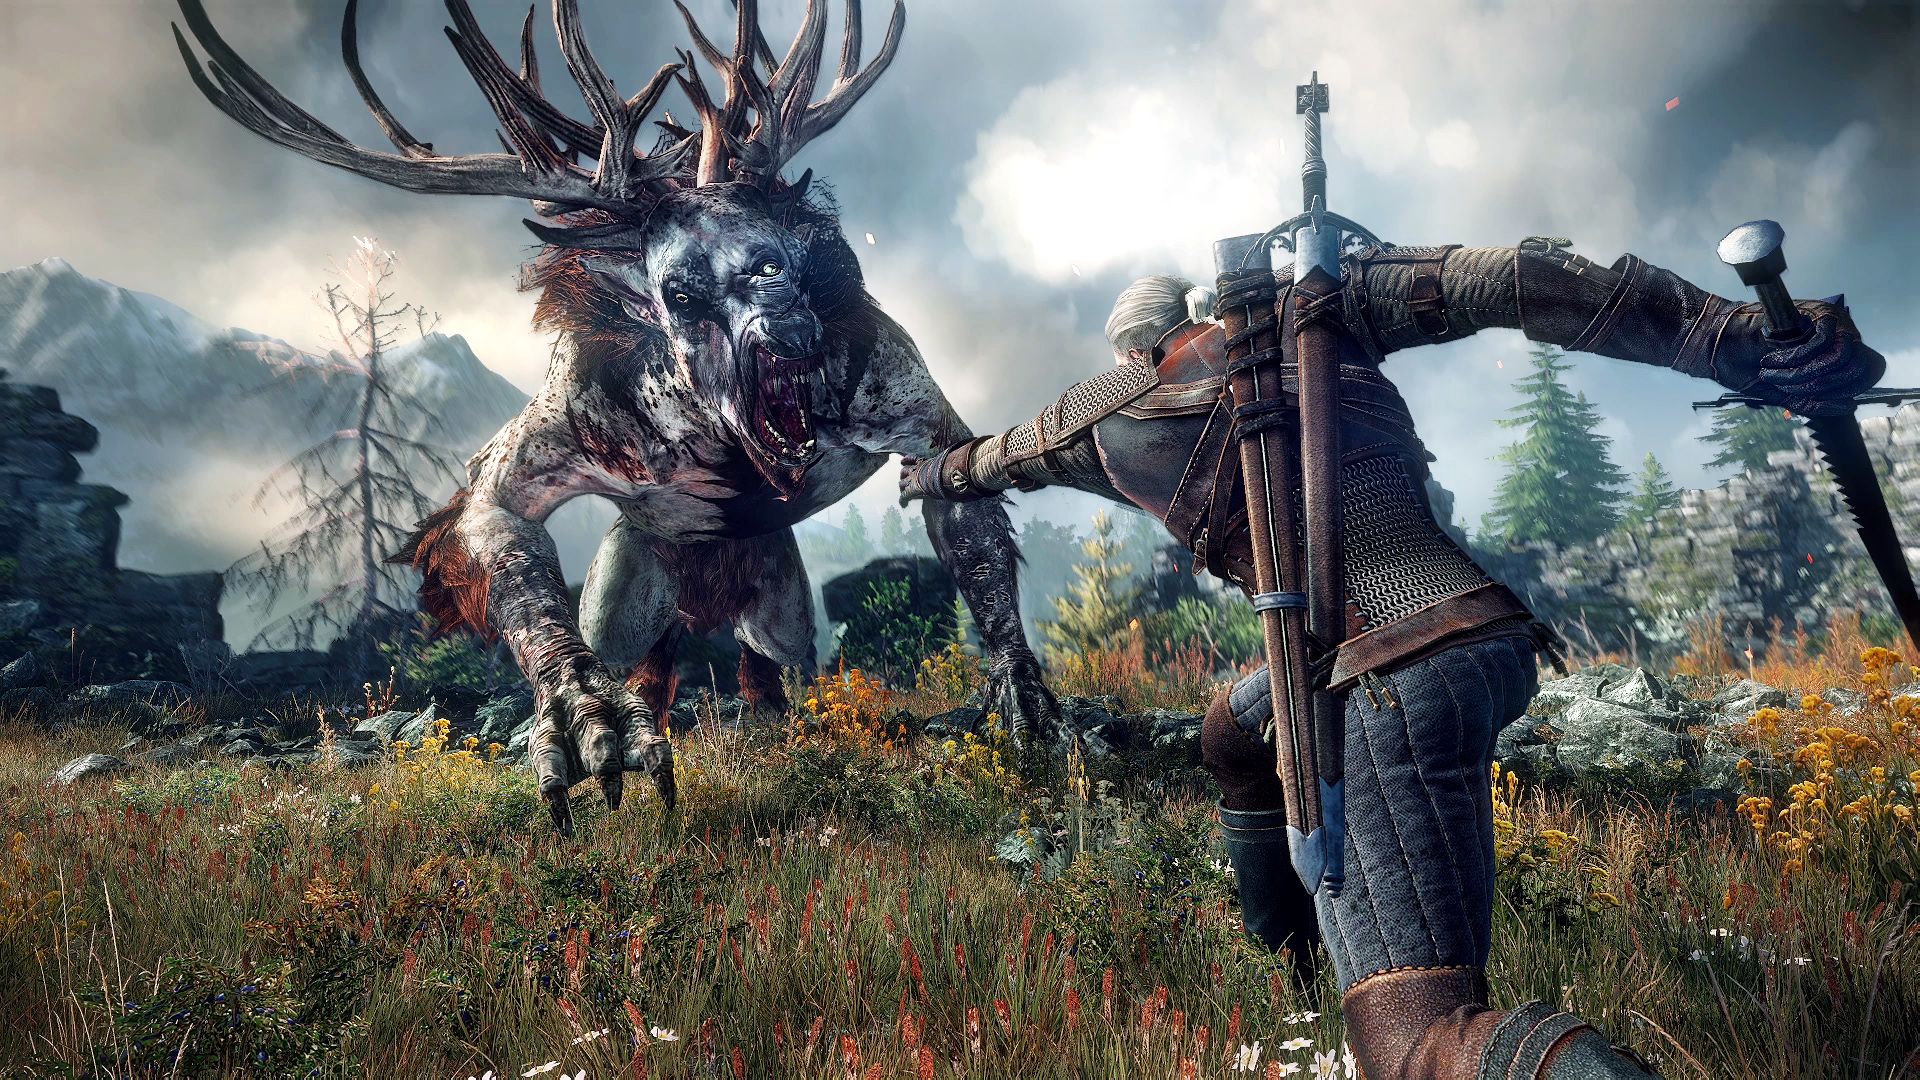 A atualização Next-Gen de The Witcher 3: Wild Hunt chega ao Xbox